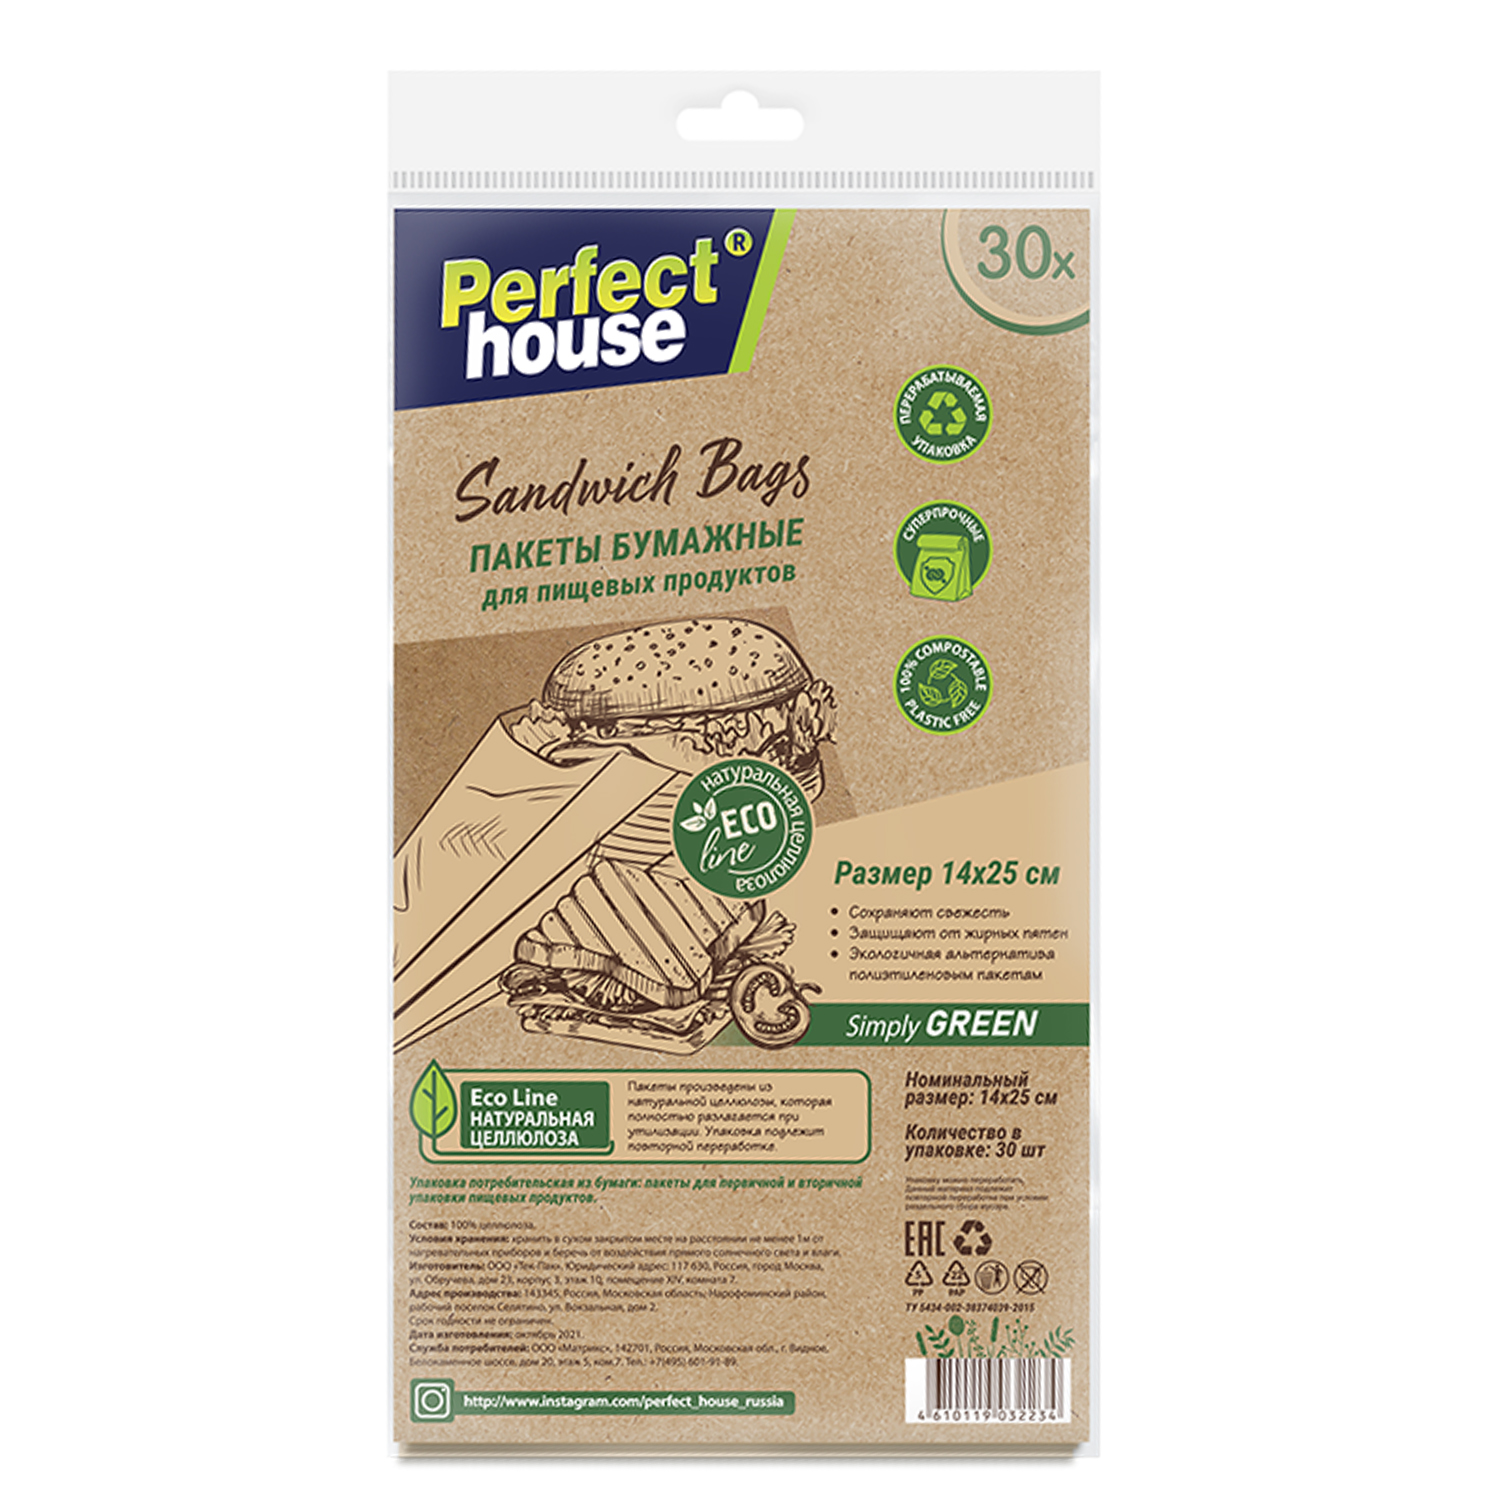 фото Perfect house eco line пакеты бумажные для пищевых продуктов sandwich bags, 30 шт